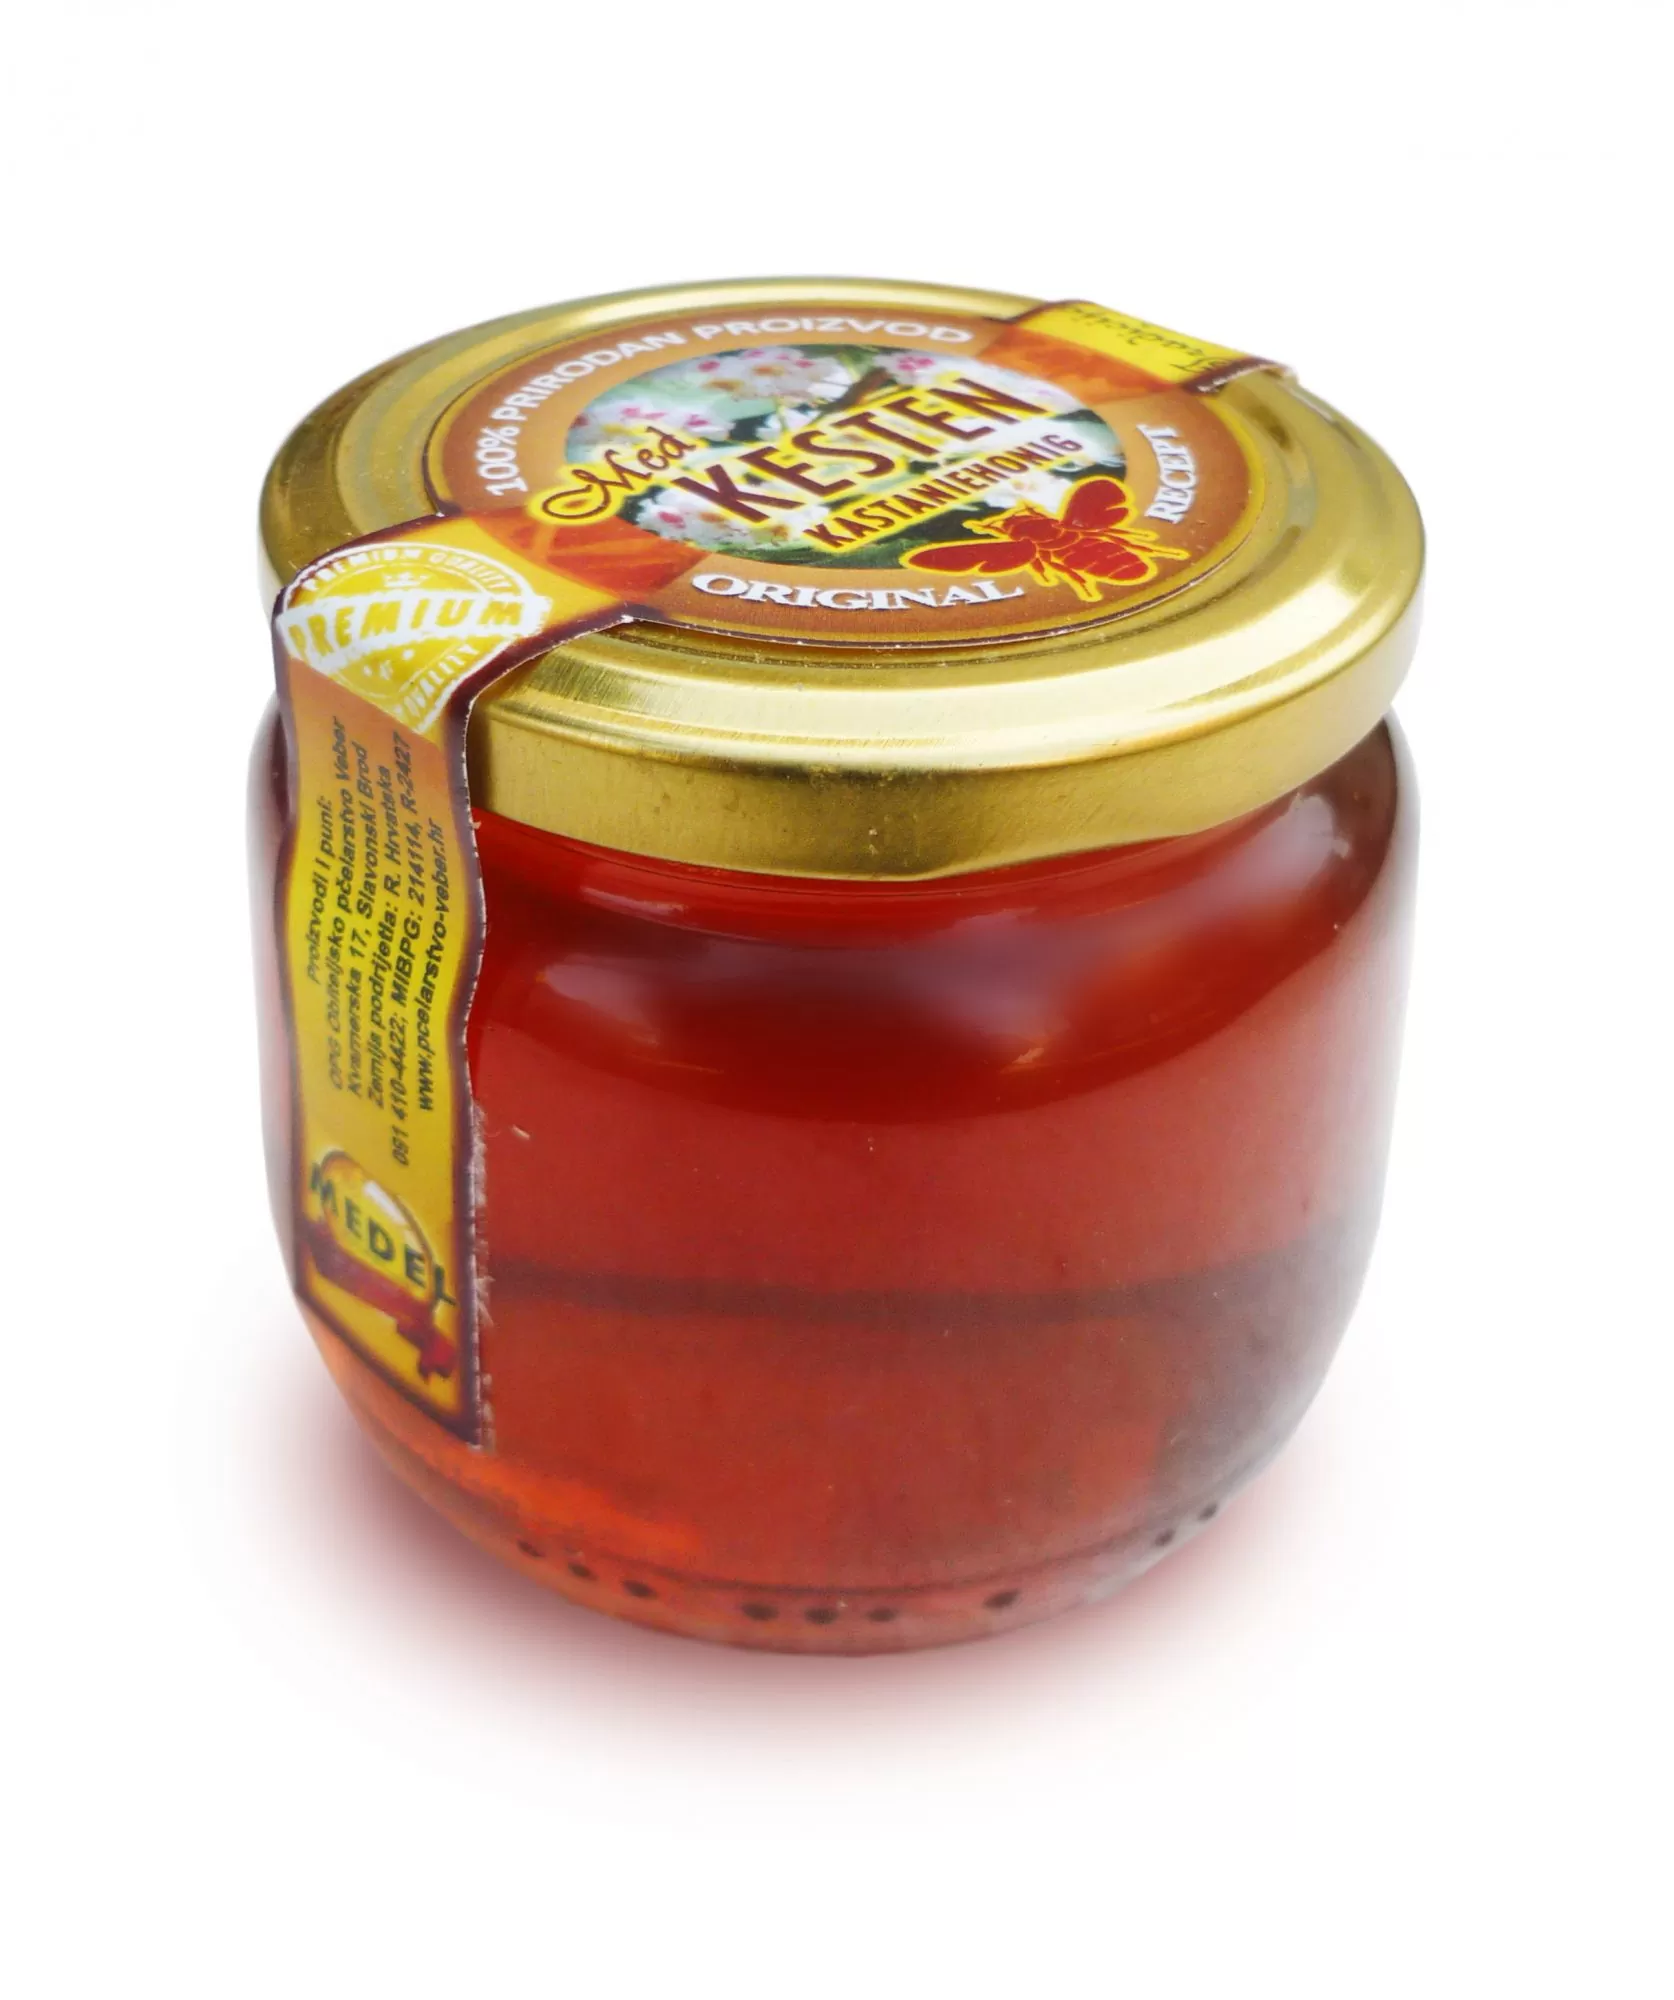 Chestnut honey 900 g